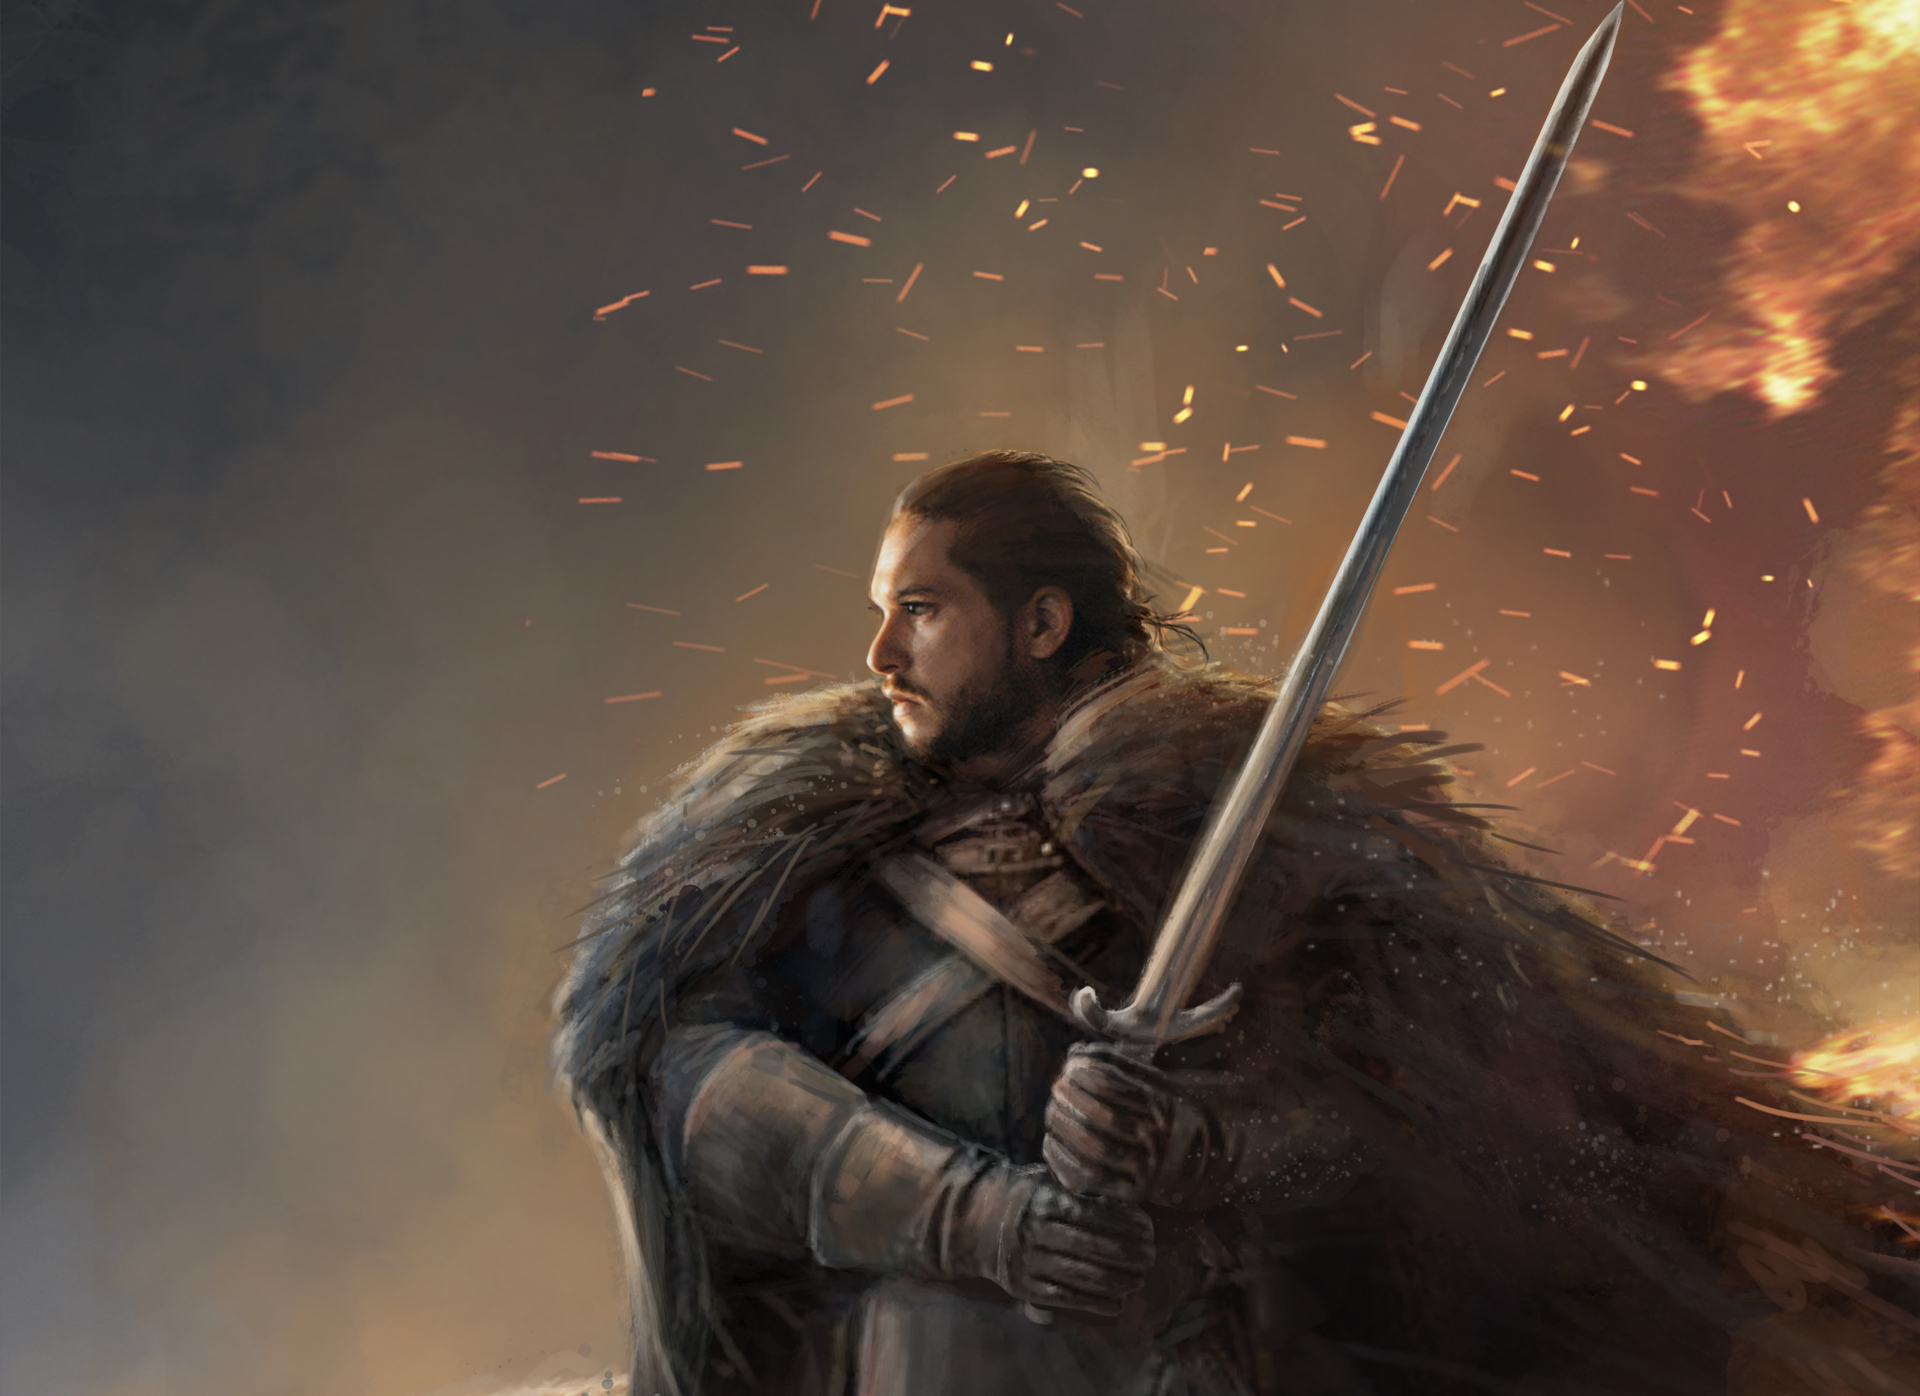 Free download wallpaper Game Of Thrones, Warrior, Sword, Tv Show, Jon Snow on your PC desktop